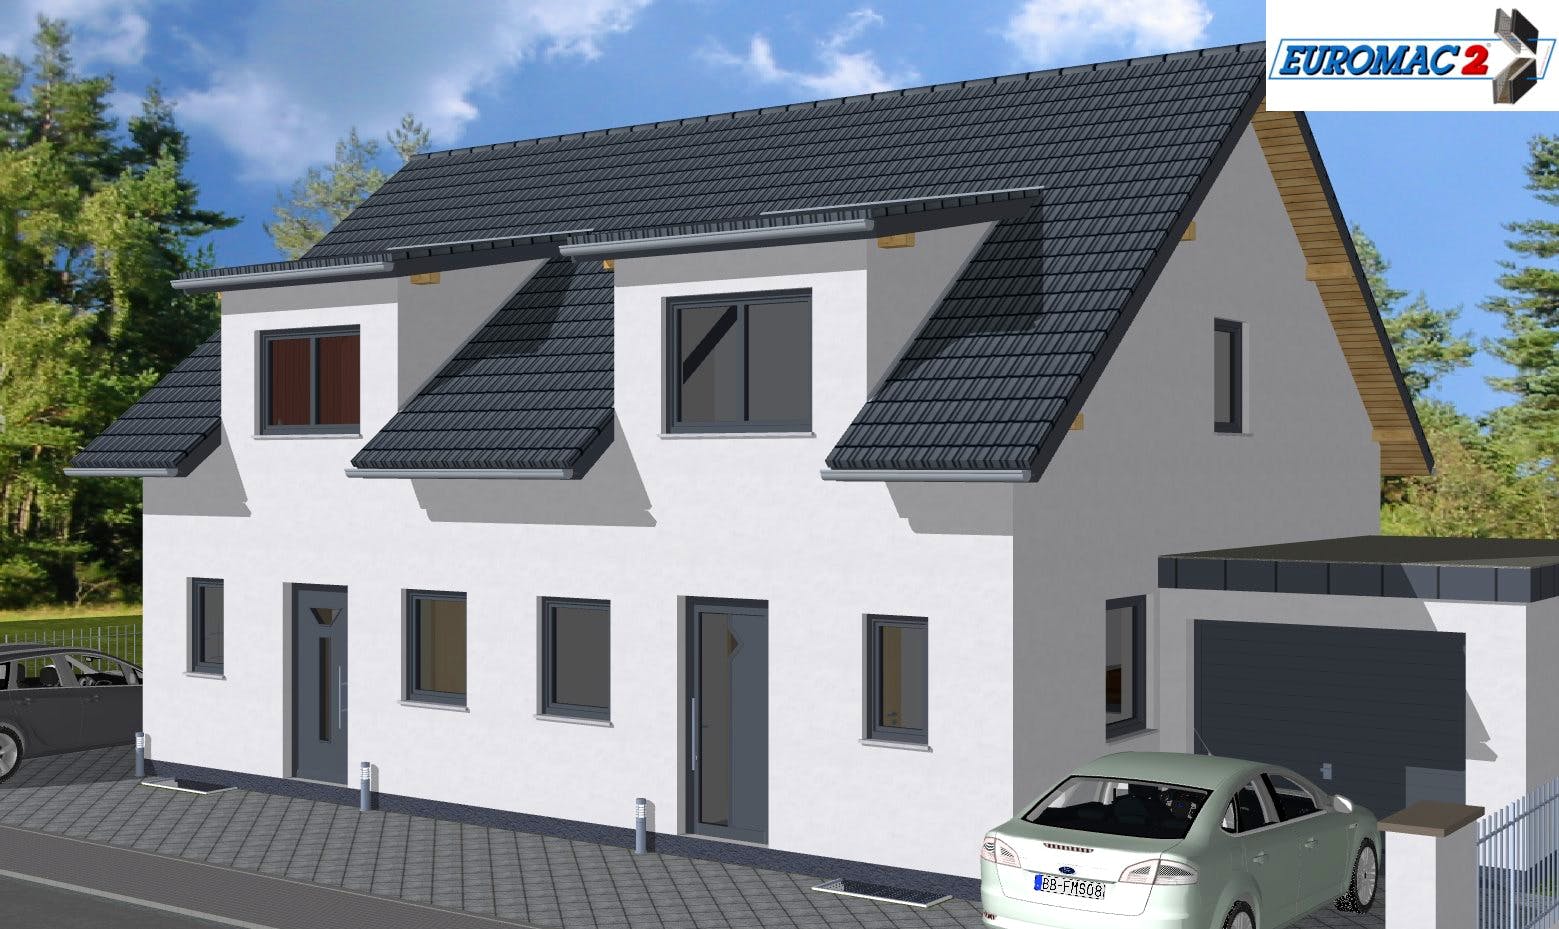 Massivhaus Trend 110 SG von EUROMAC 2 S.A.S. Bausatzhaus ab 29670€, Satteldach-Klassiker Außenansicht 2